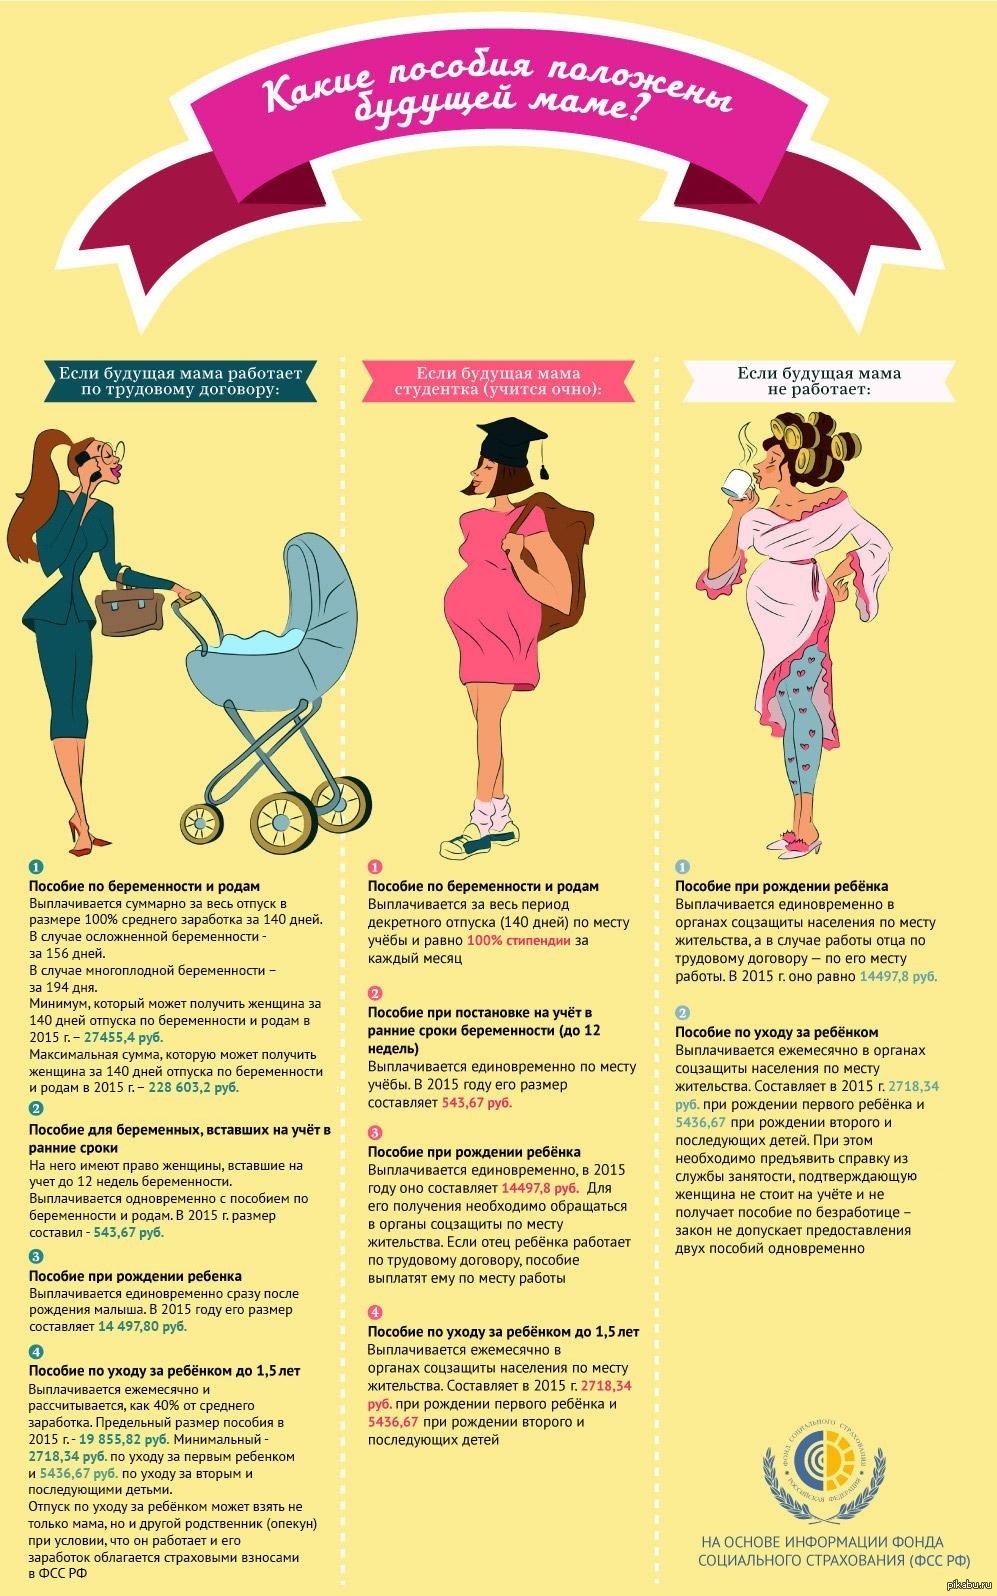 Во сколько недель надо вставать на учет по беременности: Когда вставать на учет по беременности: конкретные сроки и необходимость постановки